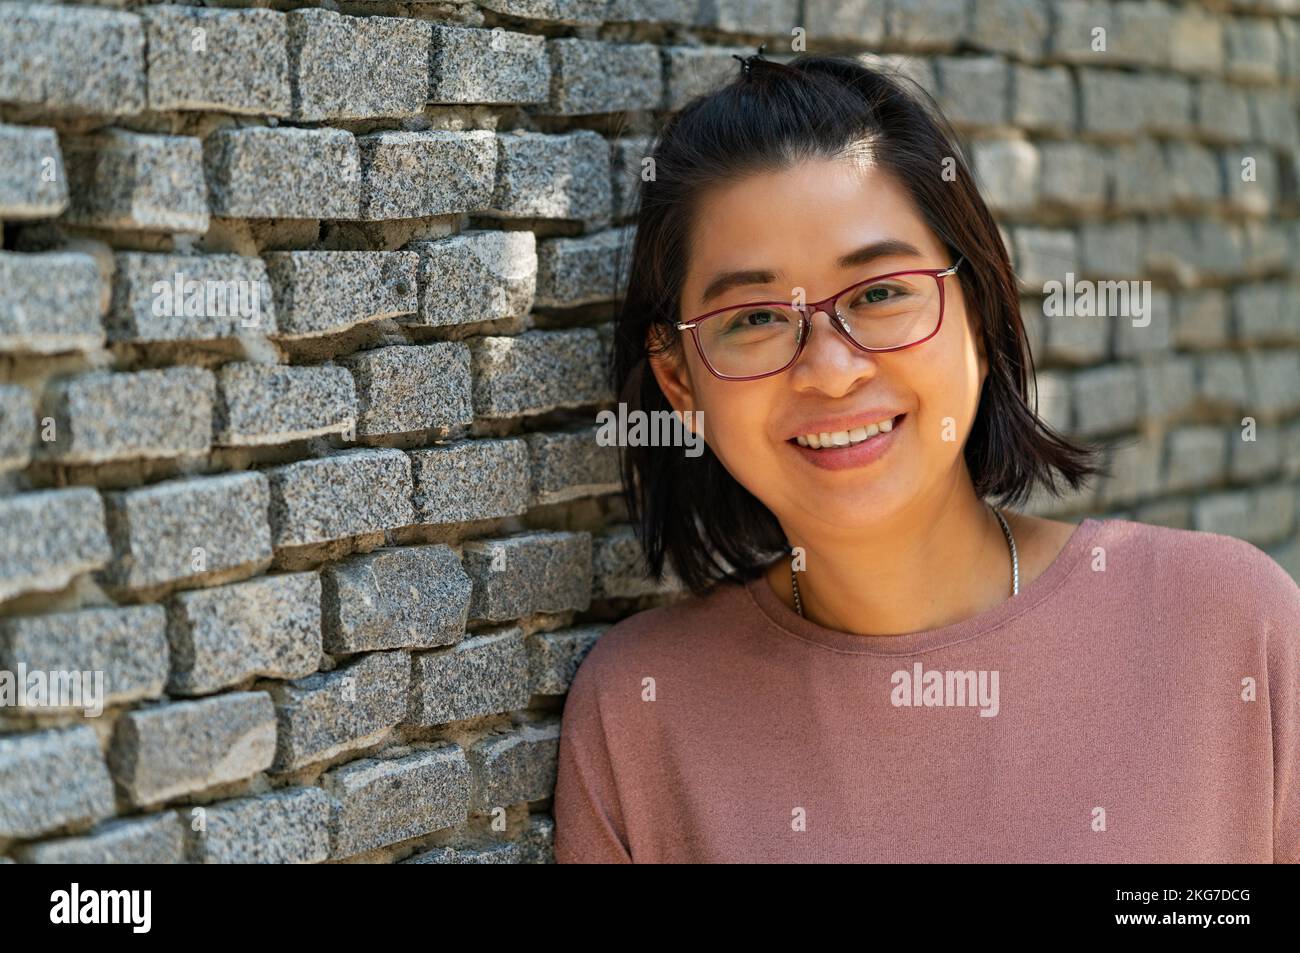 Retrato mujer asiática de mediana edad con rostro sonriente, sonriendo, se ve saludable, usa gafas, se apoya en pared gris de ladrillo, vista en perspectiva, s vacío Foto de stock